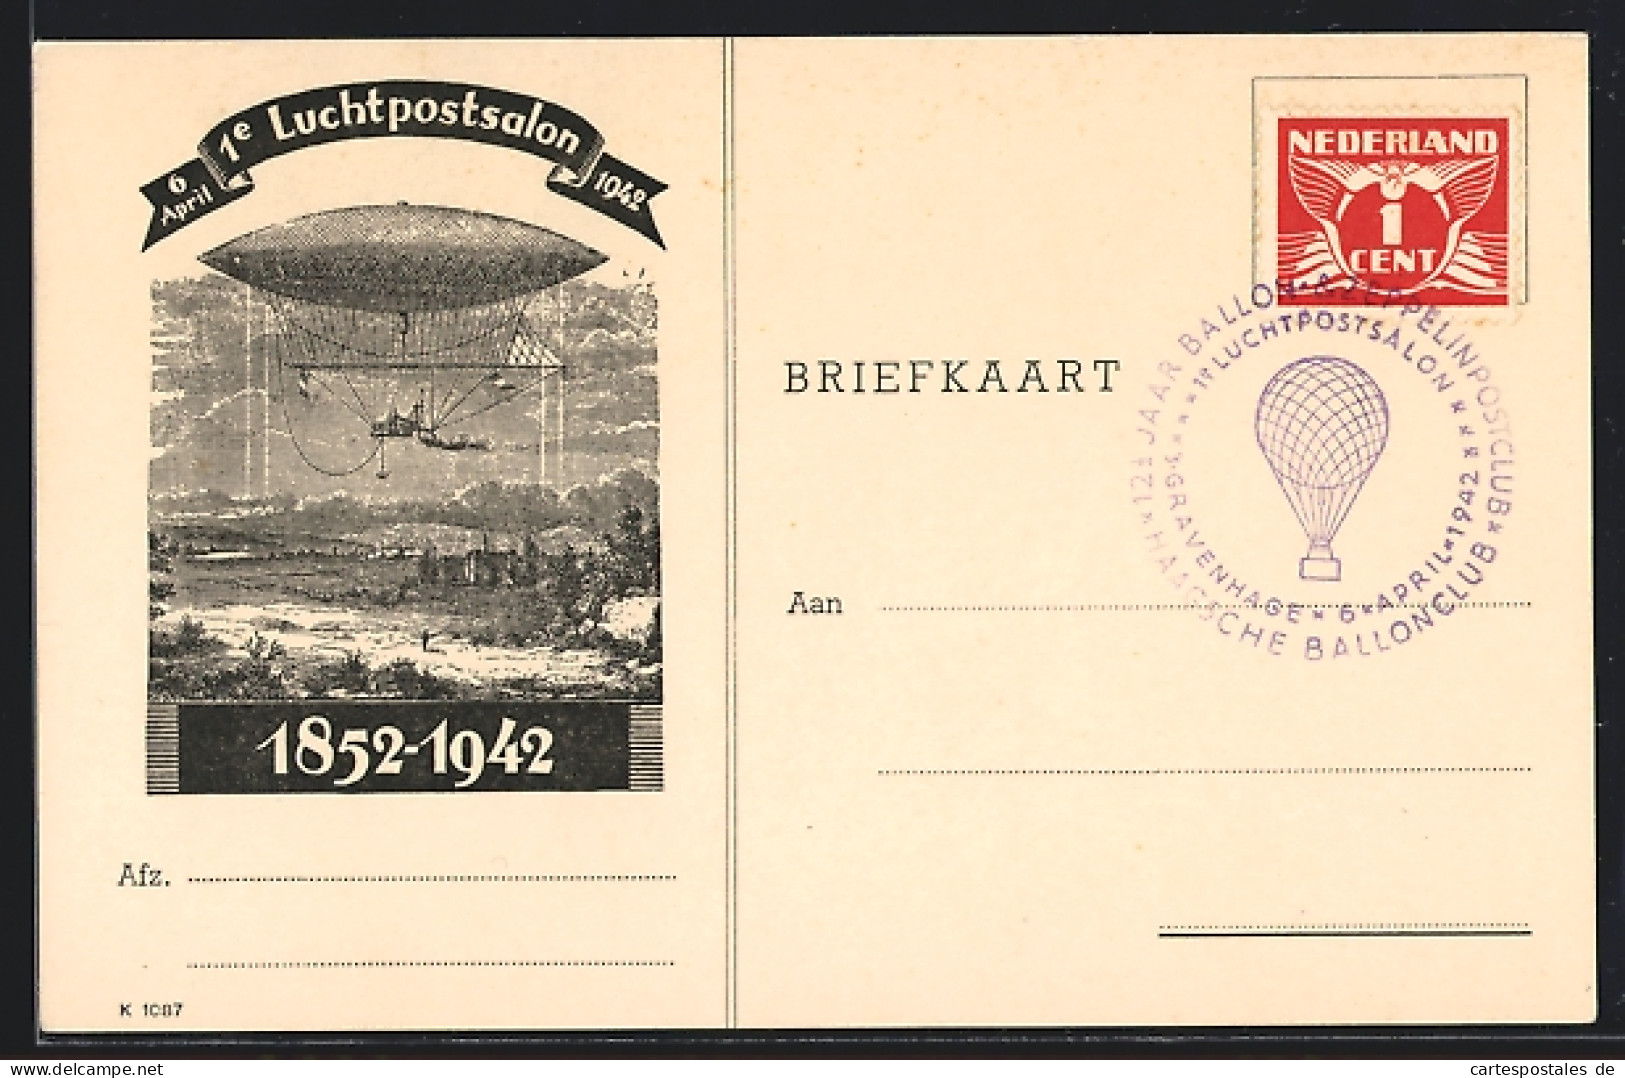 Künstler-AK Gravenhage, Erste Luchtpostsalon, April 1942, Zeppelin, 1852-1942  - Stamps (pictures)